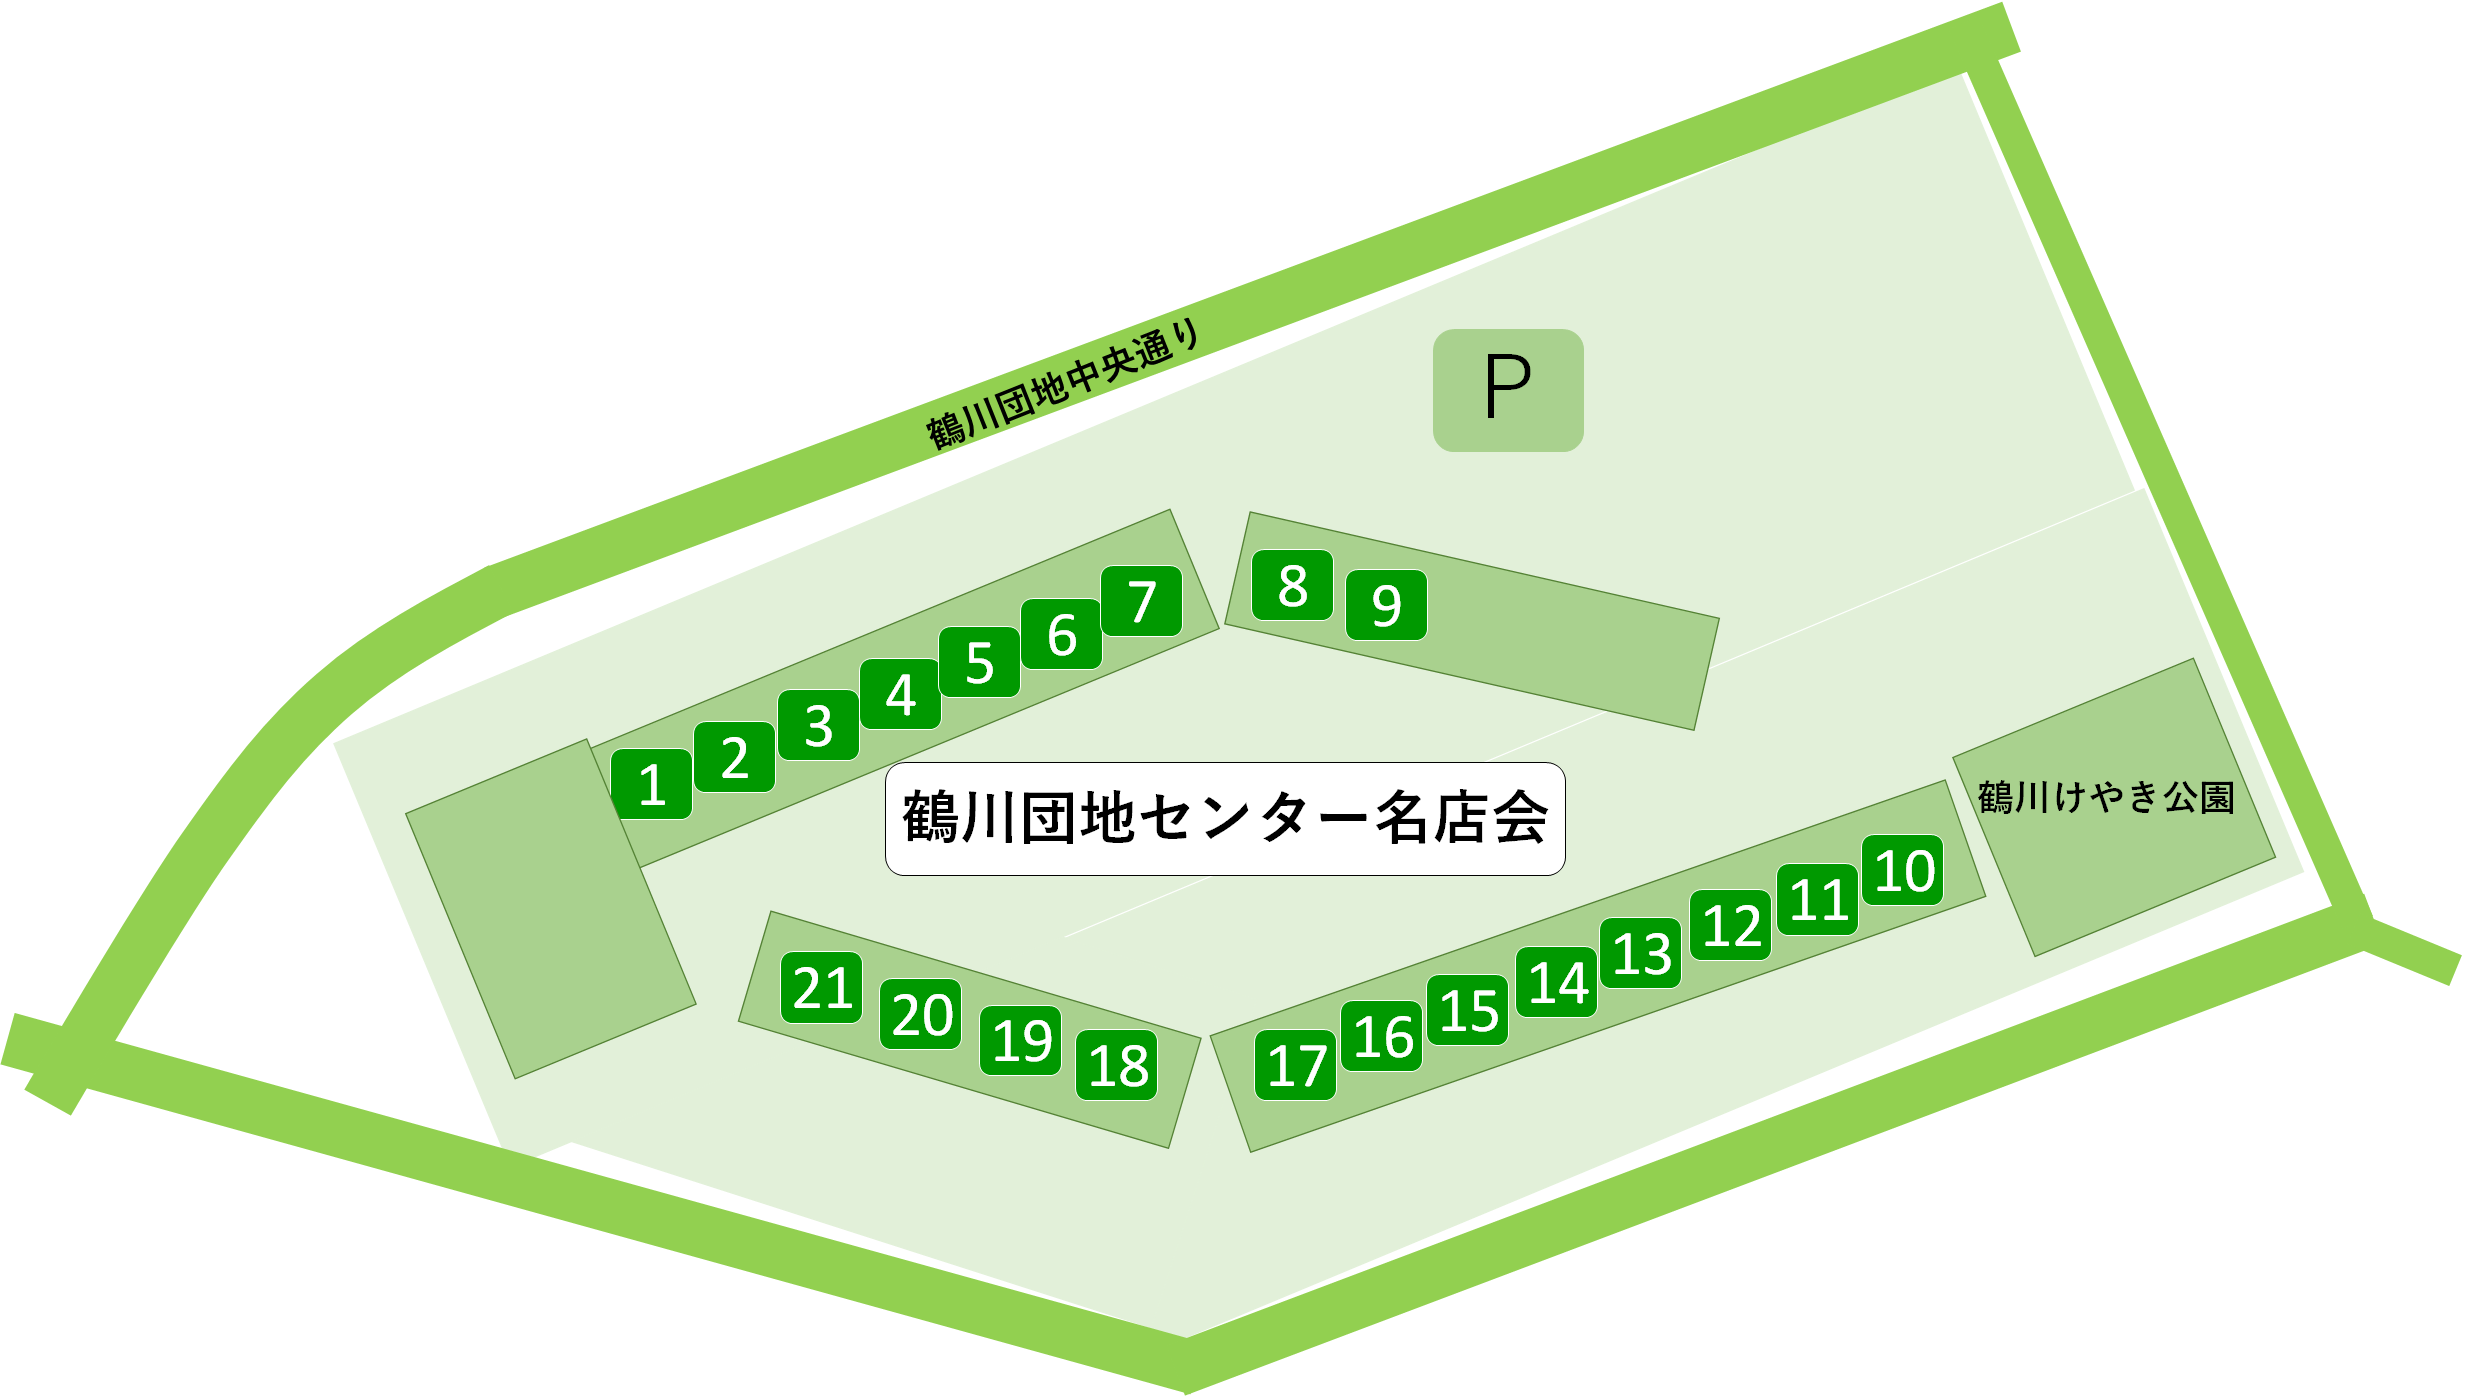 鶴川団地センター名店会の地図